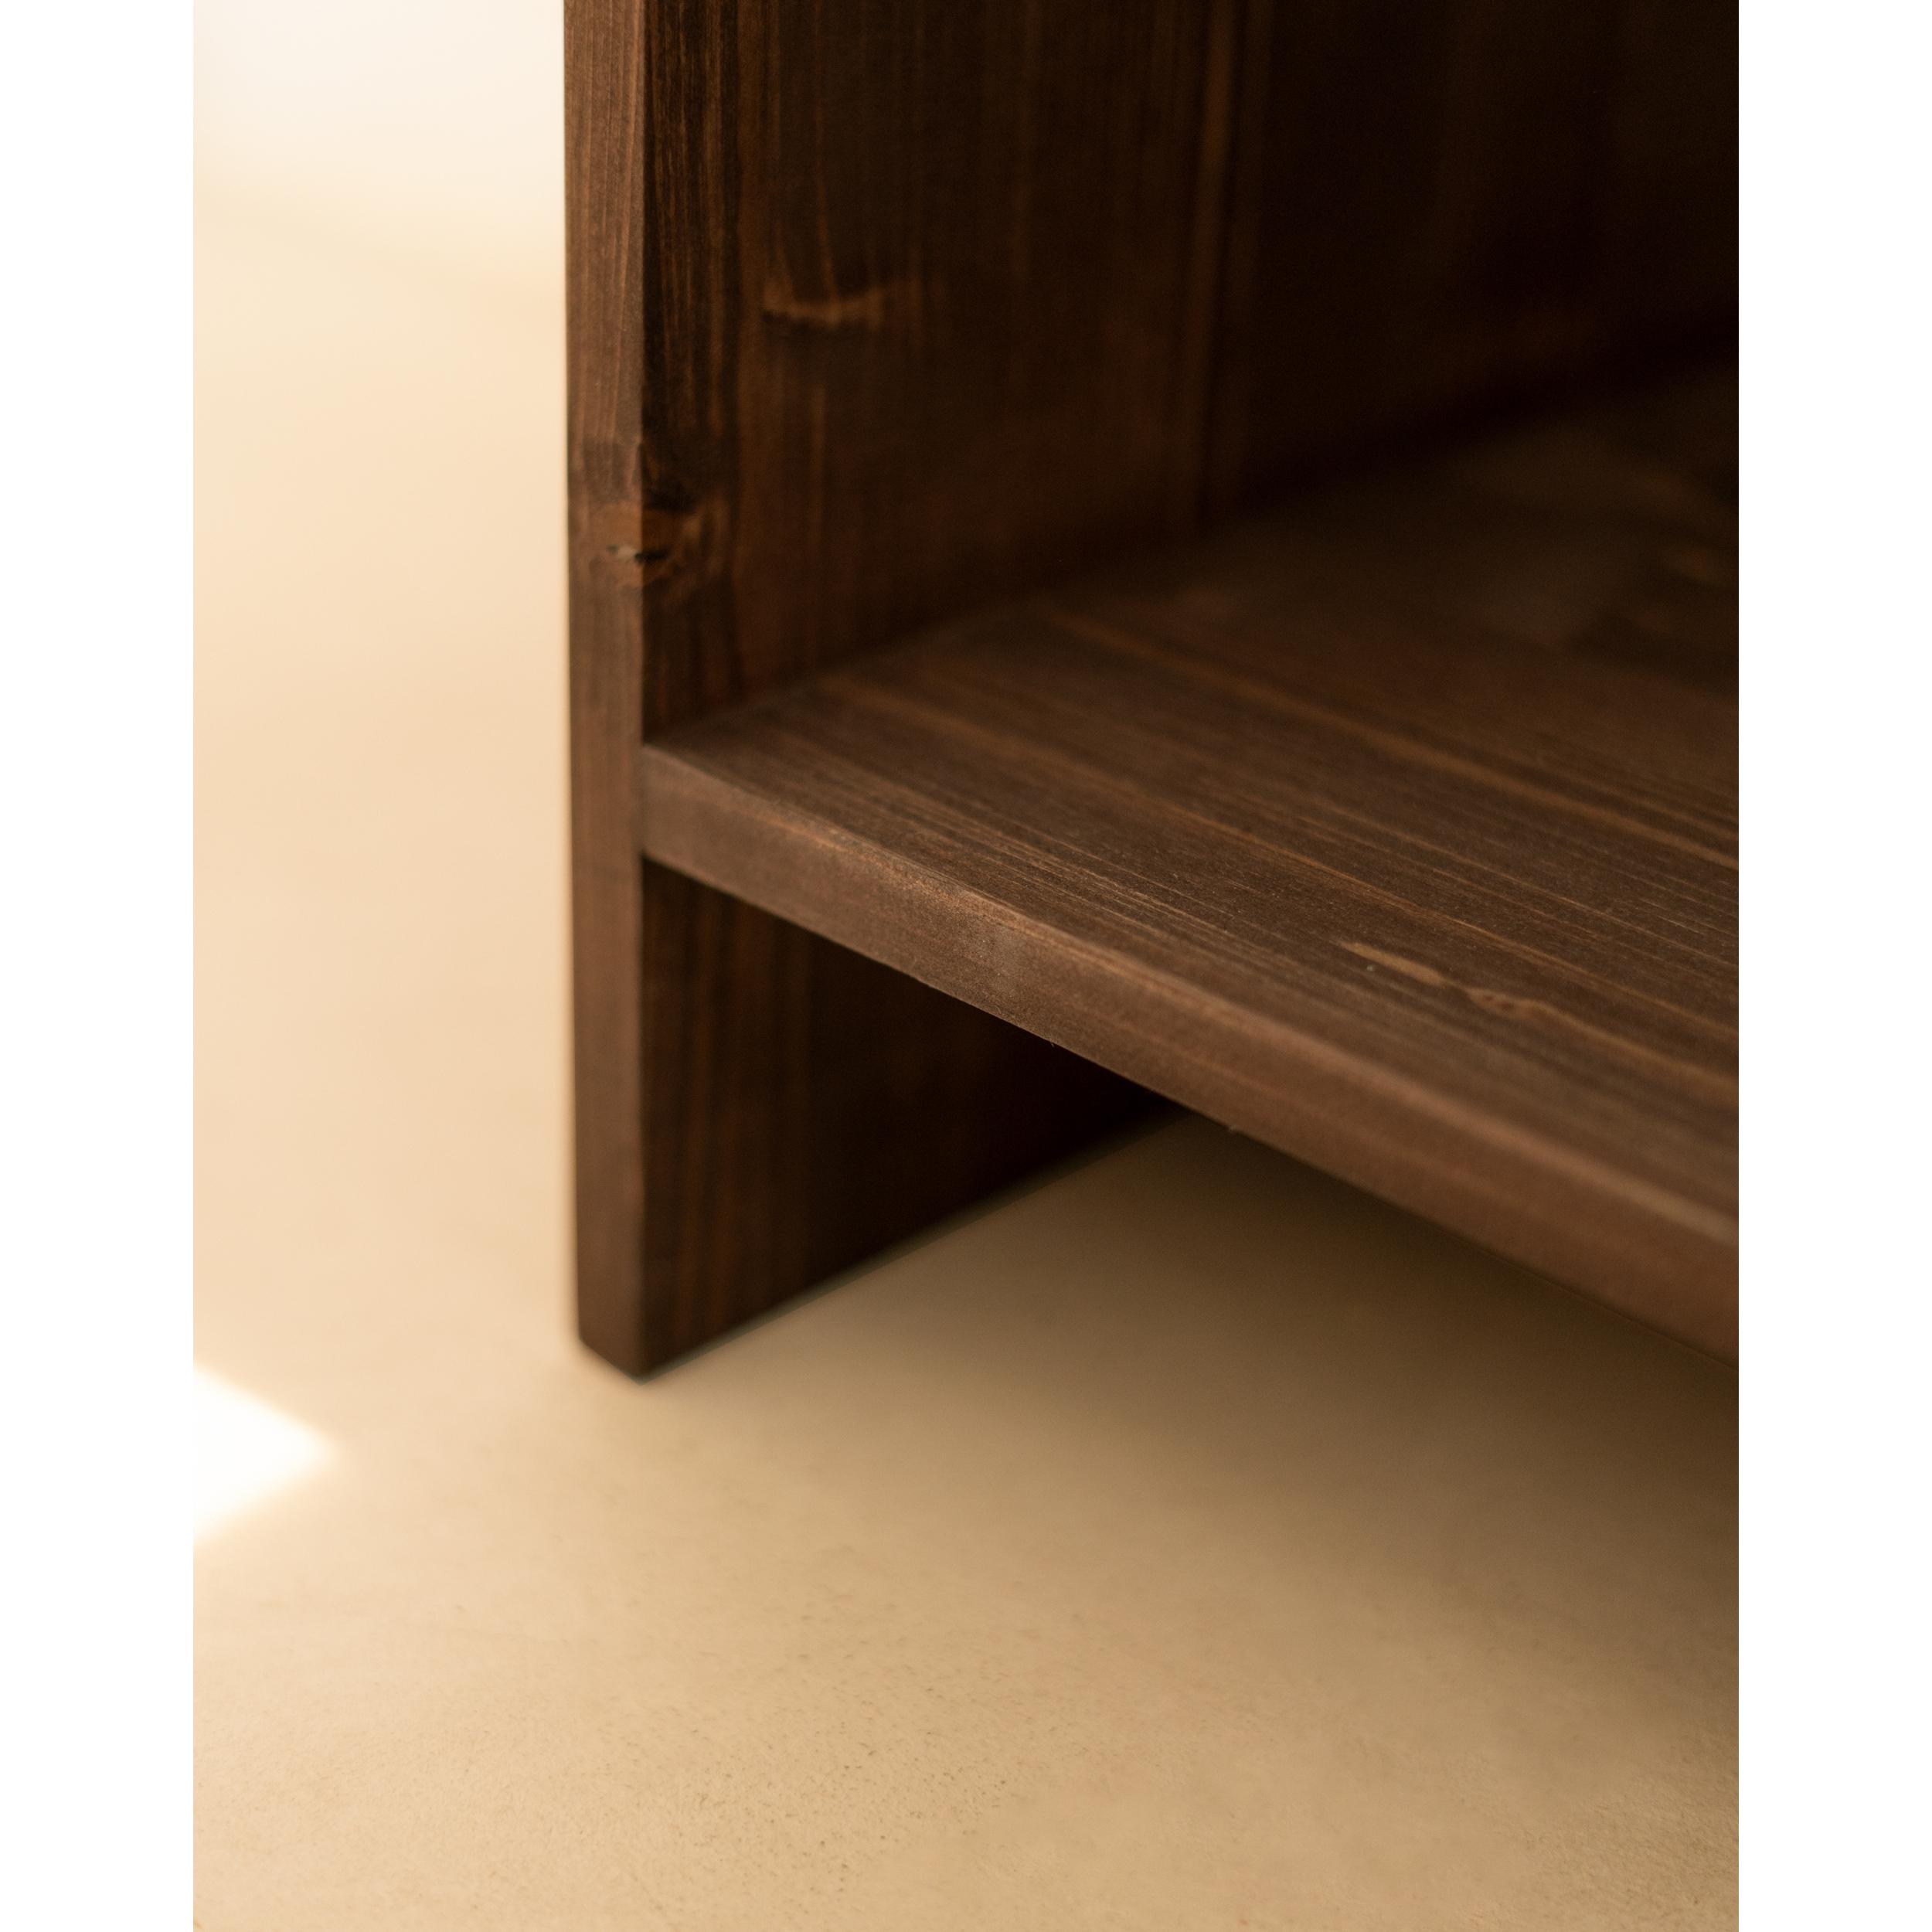 Table de chevet en bois massif avec un tiroir couleur noyer 50x40cm Hauteur: 50 Longueur: 40 Largeur: 29.5